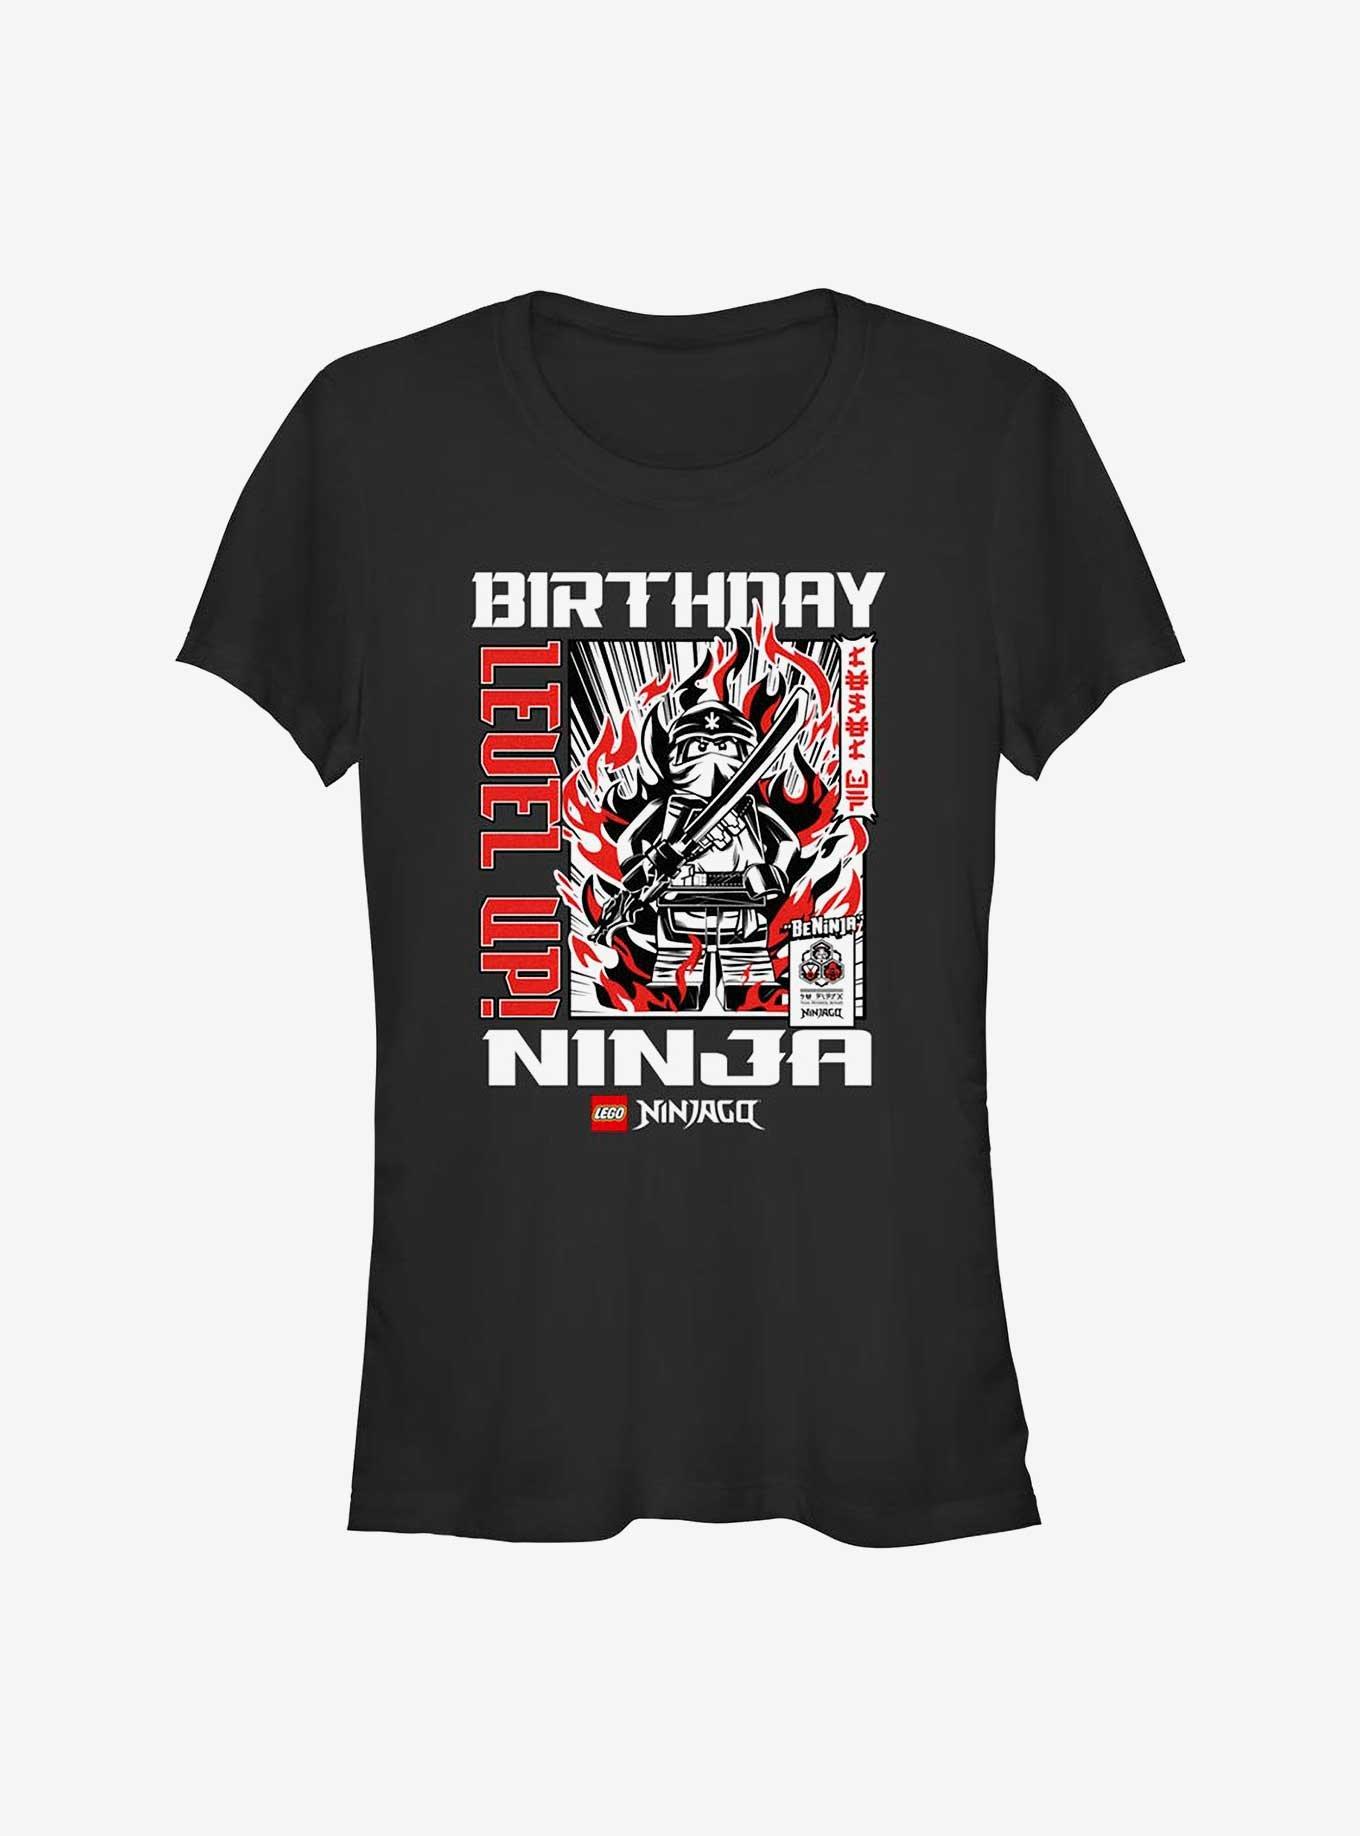 Lego Ninjago Birthday Ninja Girls T-Shirt